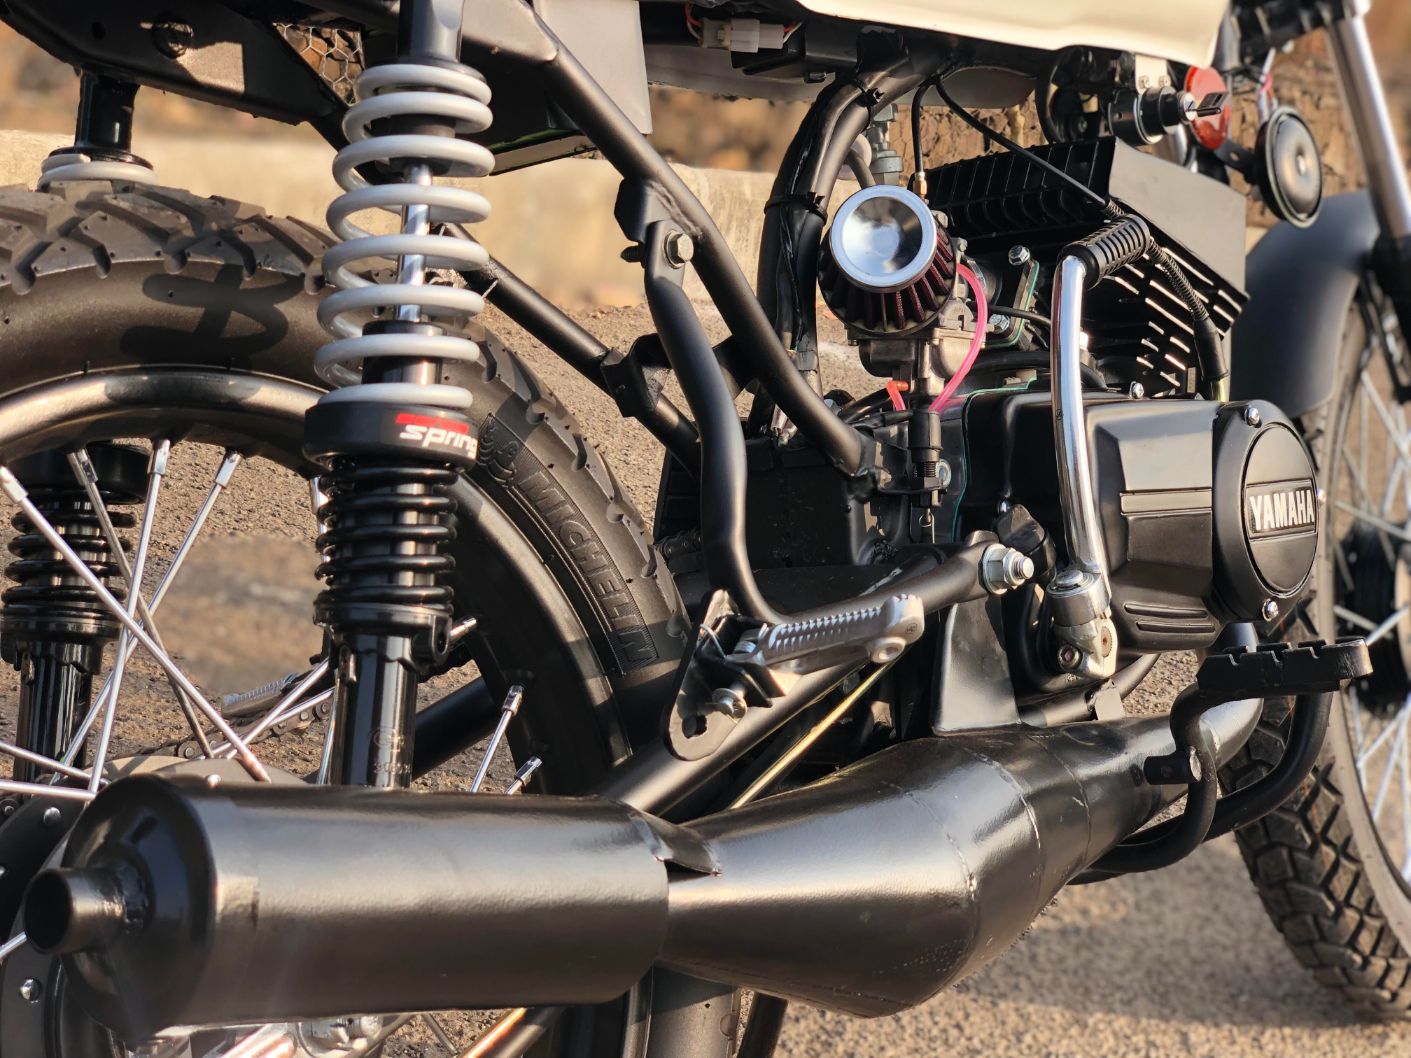 Meet Yamaha RX100 Premium Model By FIXUP Motorcycle Garage - closeup